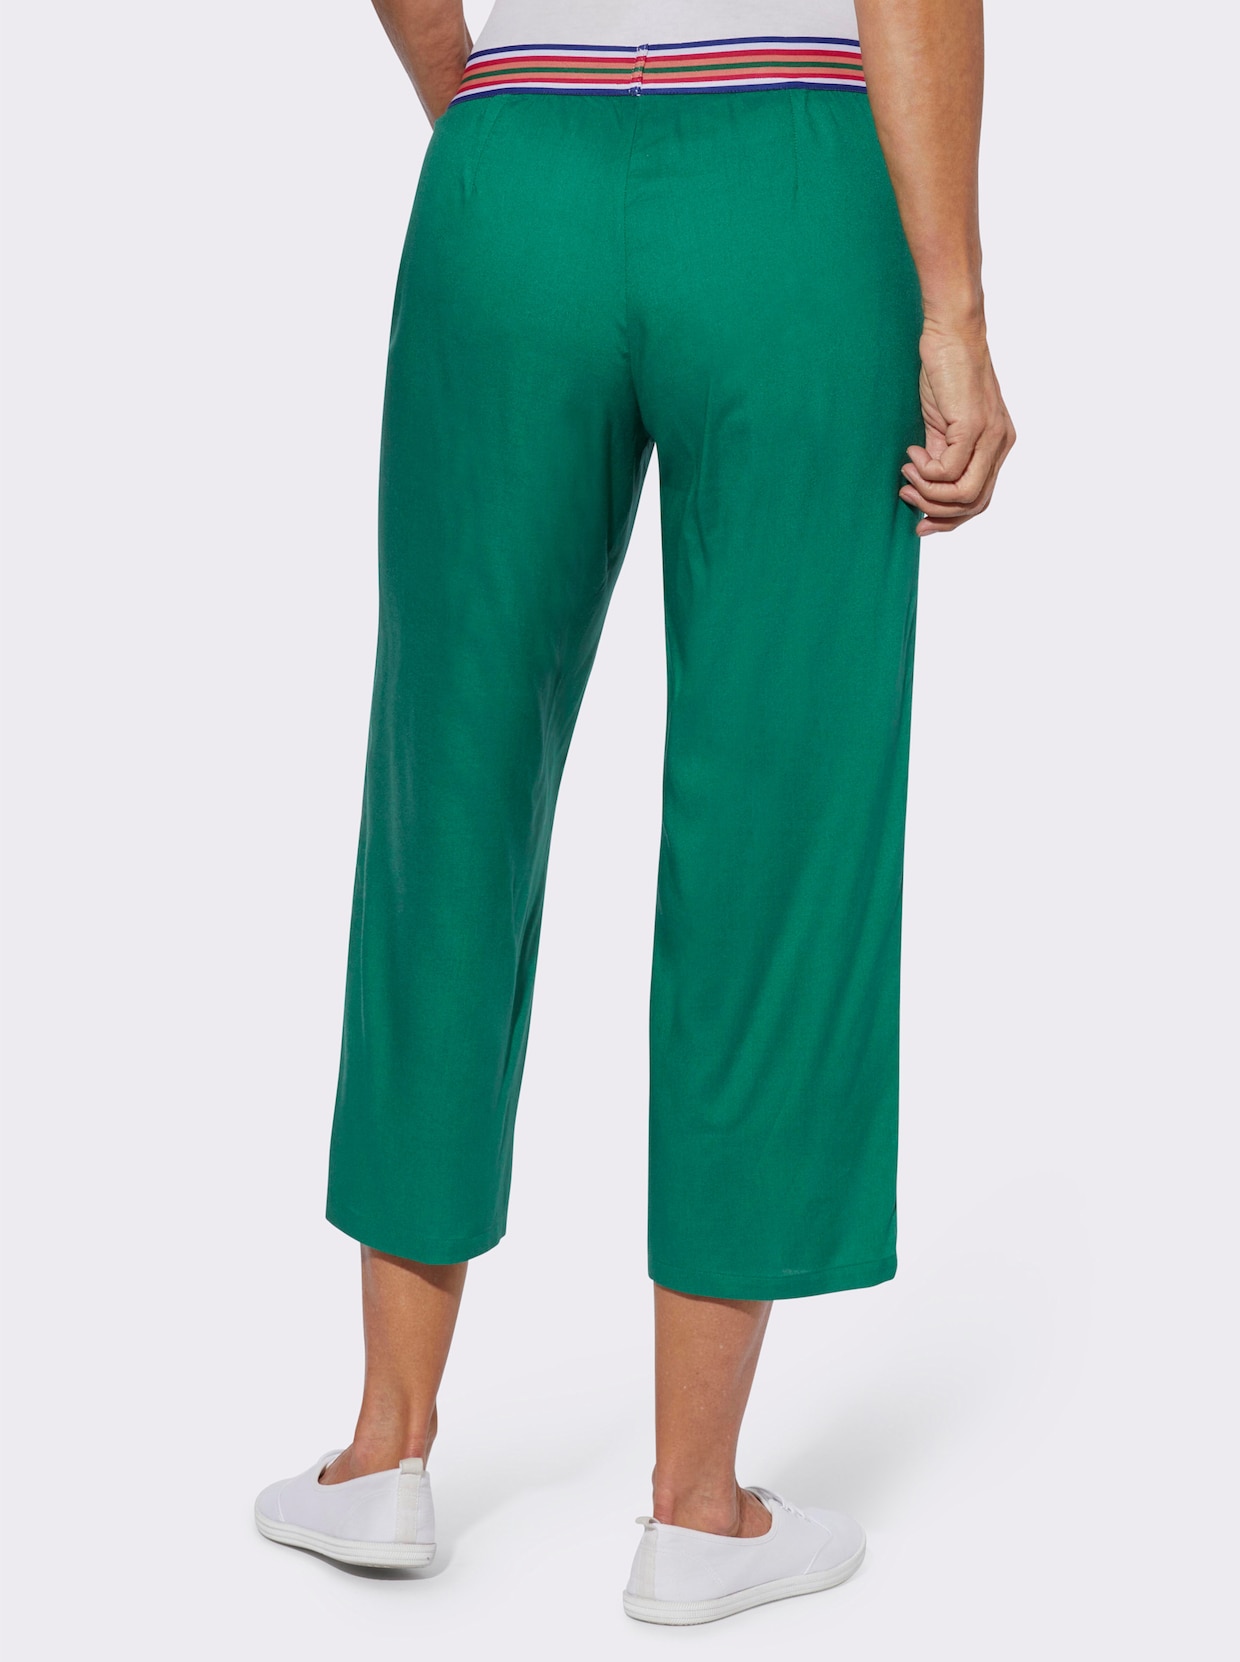 Nohavice na gumu - zelená